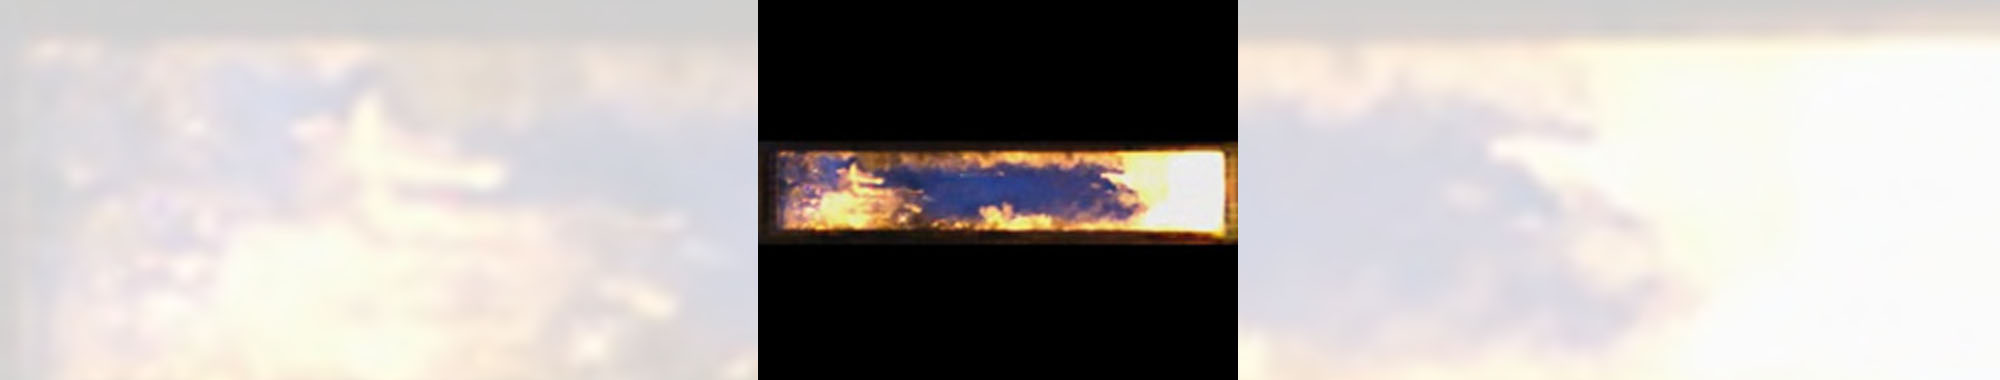 ガソリンエンジンの異常燃焼 -ノック発生過程の直接光可視化撮影